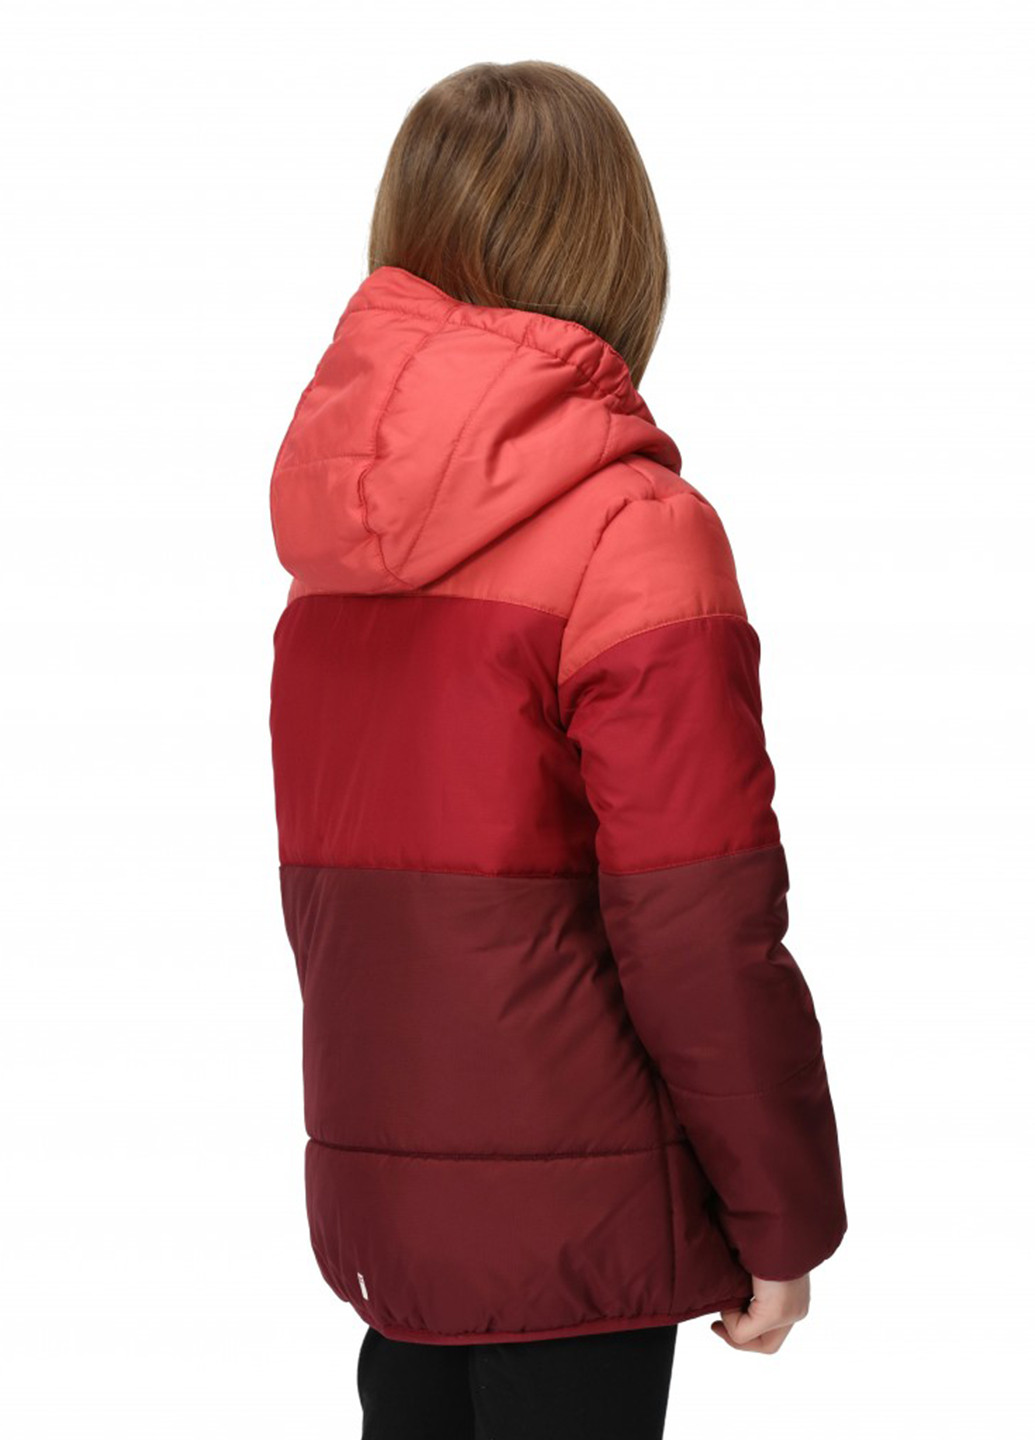 Красная зимняя куртка Regatta